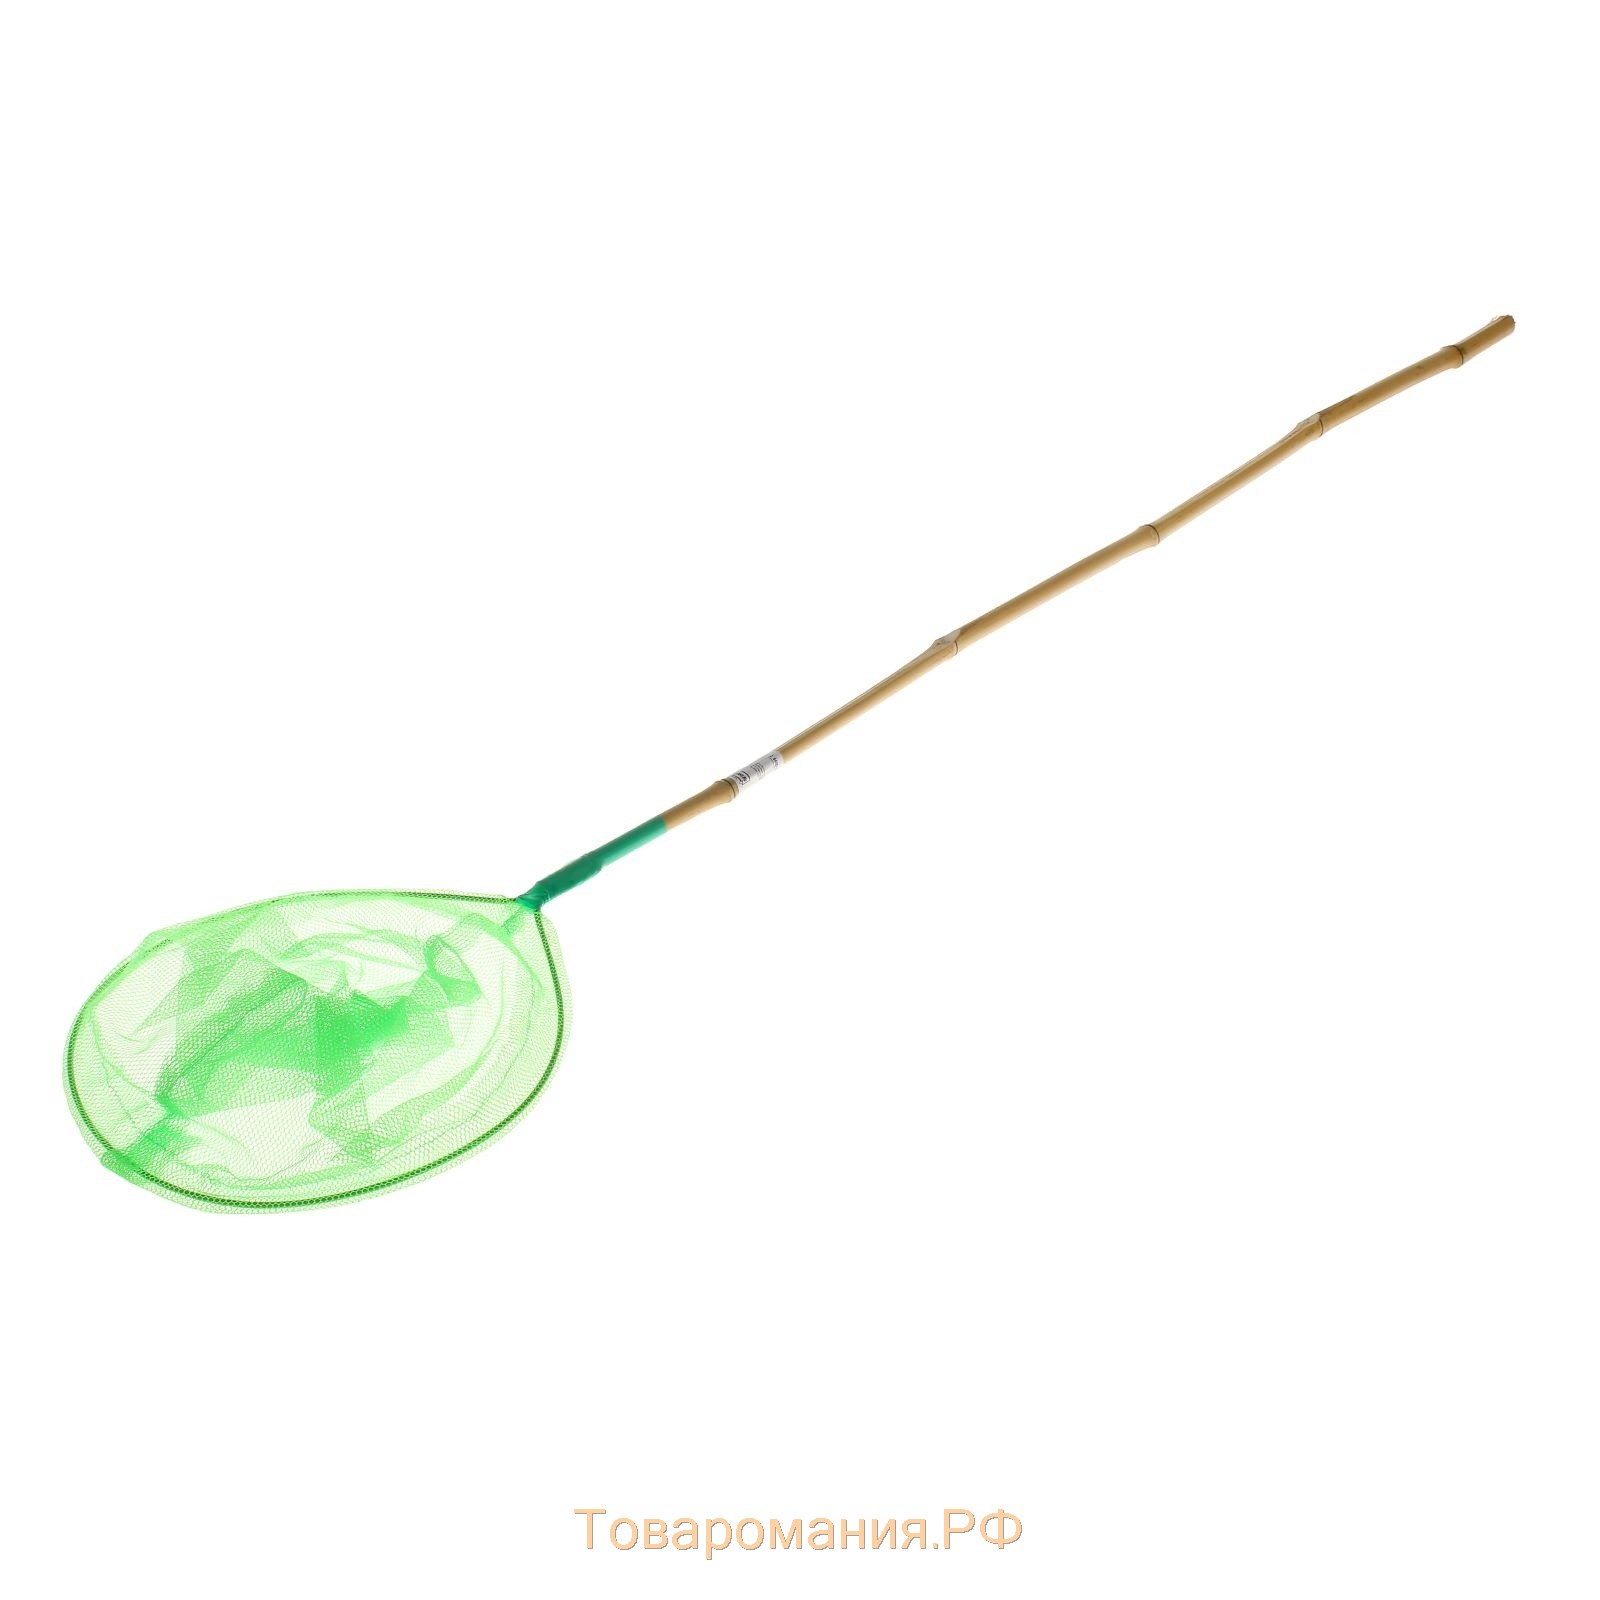 Сачок детский, бамбуковая ручка 81 см, d=20 см, цвета МИКС